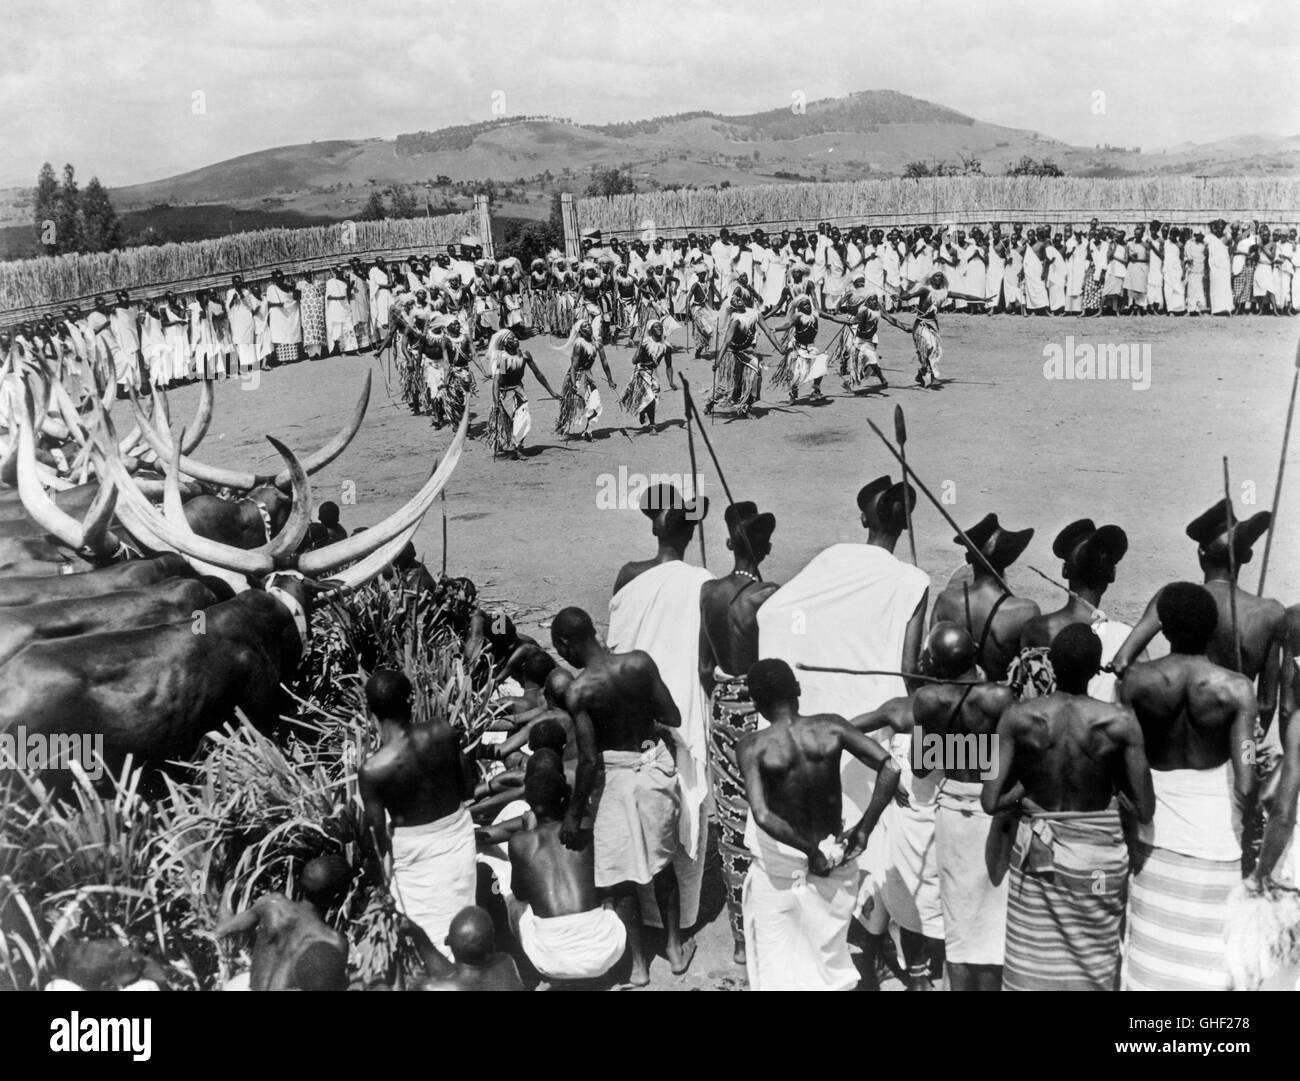 MINES DU ROI SALOMON USA 1950 C. Bennett, A. Marton scène de danse  autochtones en Afrique. Regie : C. Bennett, A. Marton Photo Stock - Alamy